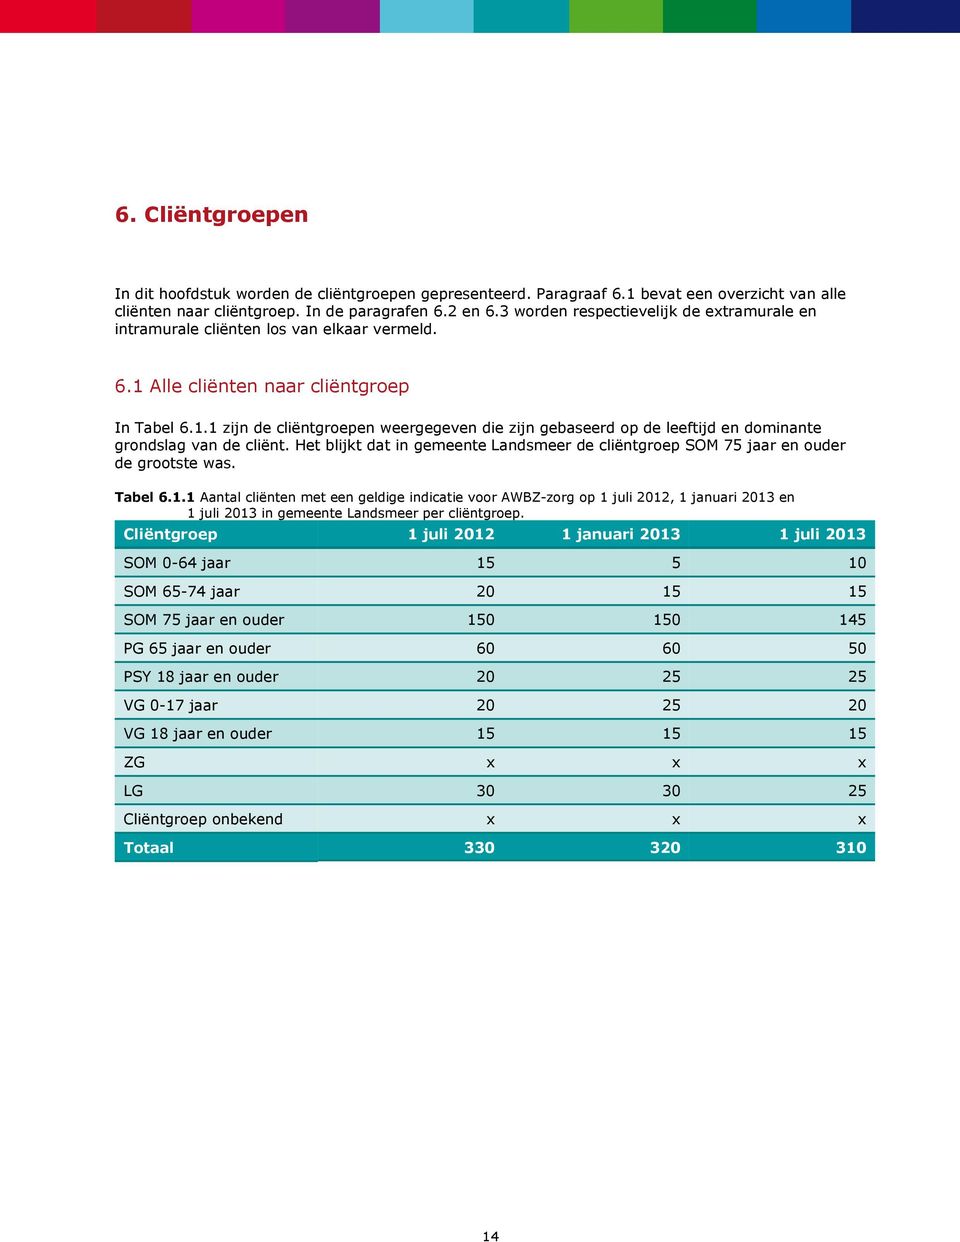 Het blijkt dat in gemeente Landsmeer de cliëntgroep SOM 75 jaar en de grootste was. Tabel 6.1.